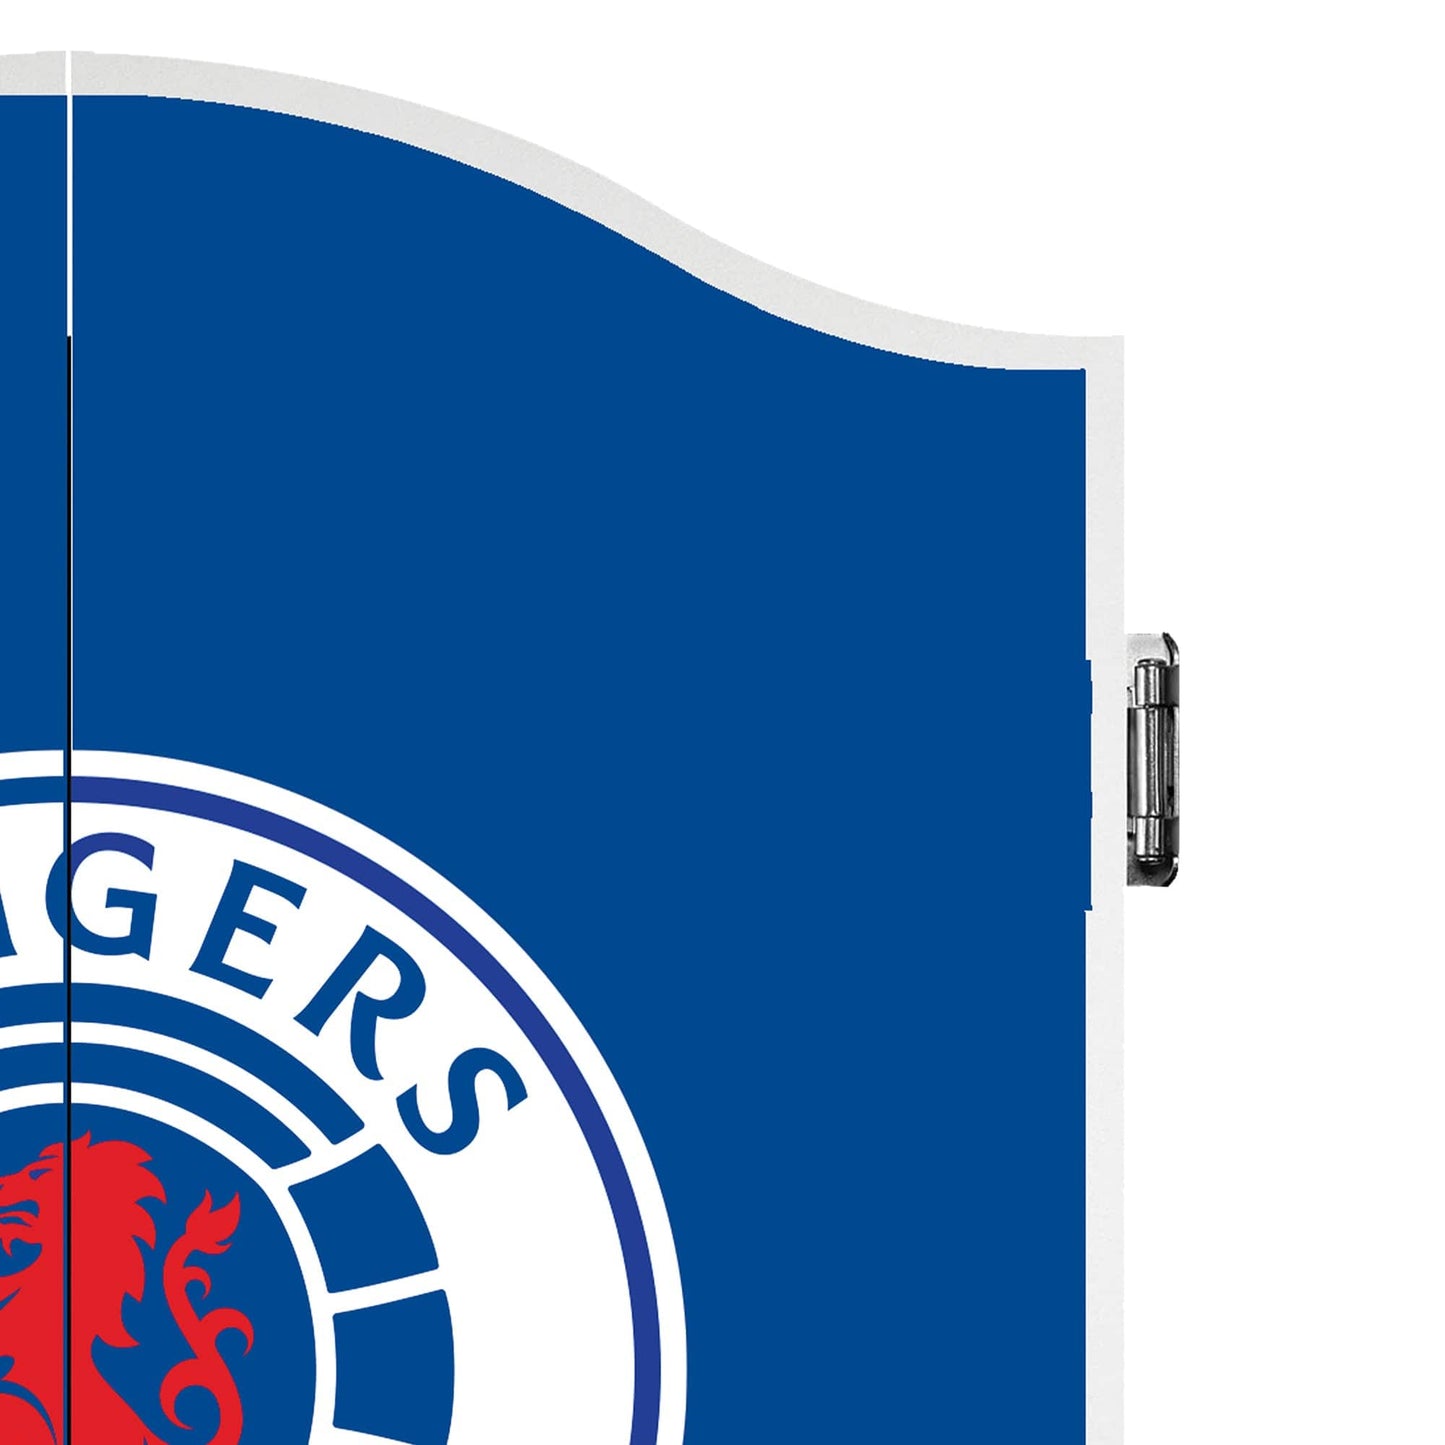 Rangers FC Dartboard Cabinet - Official Licensed - RFC - C2 - Crest